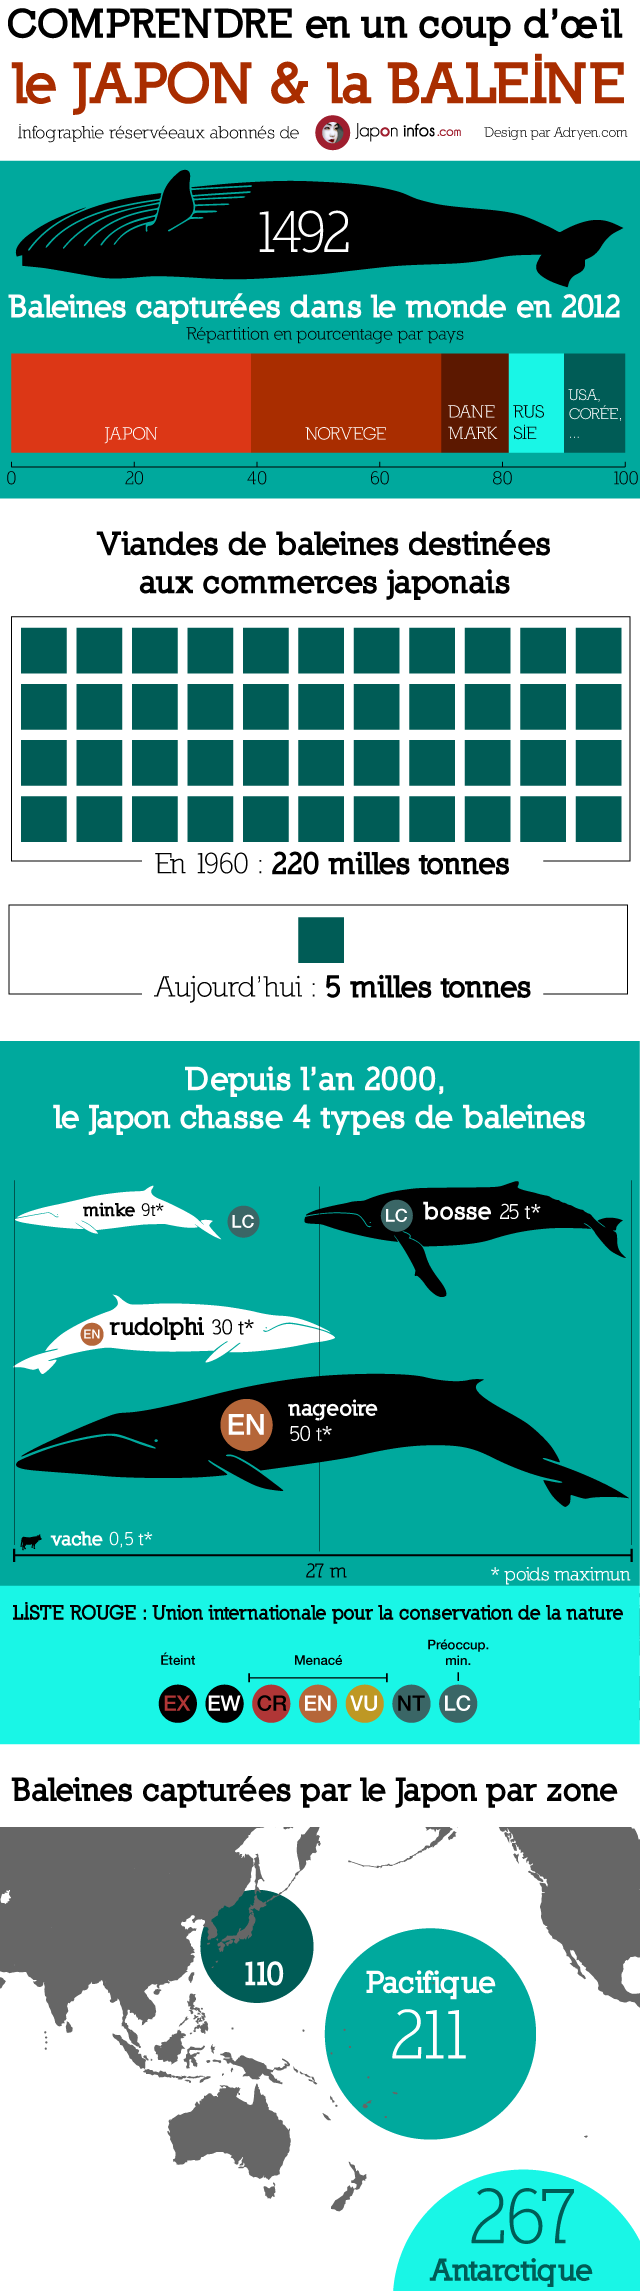 Baleine-infographie-chasse-japon